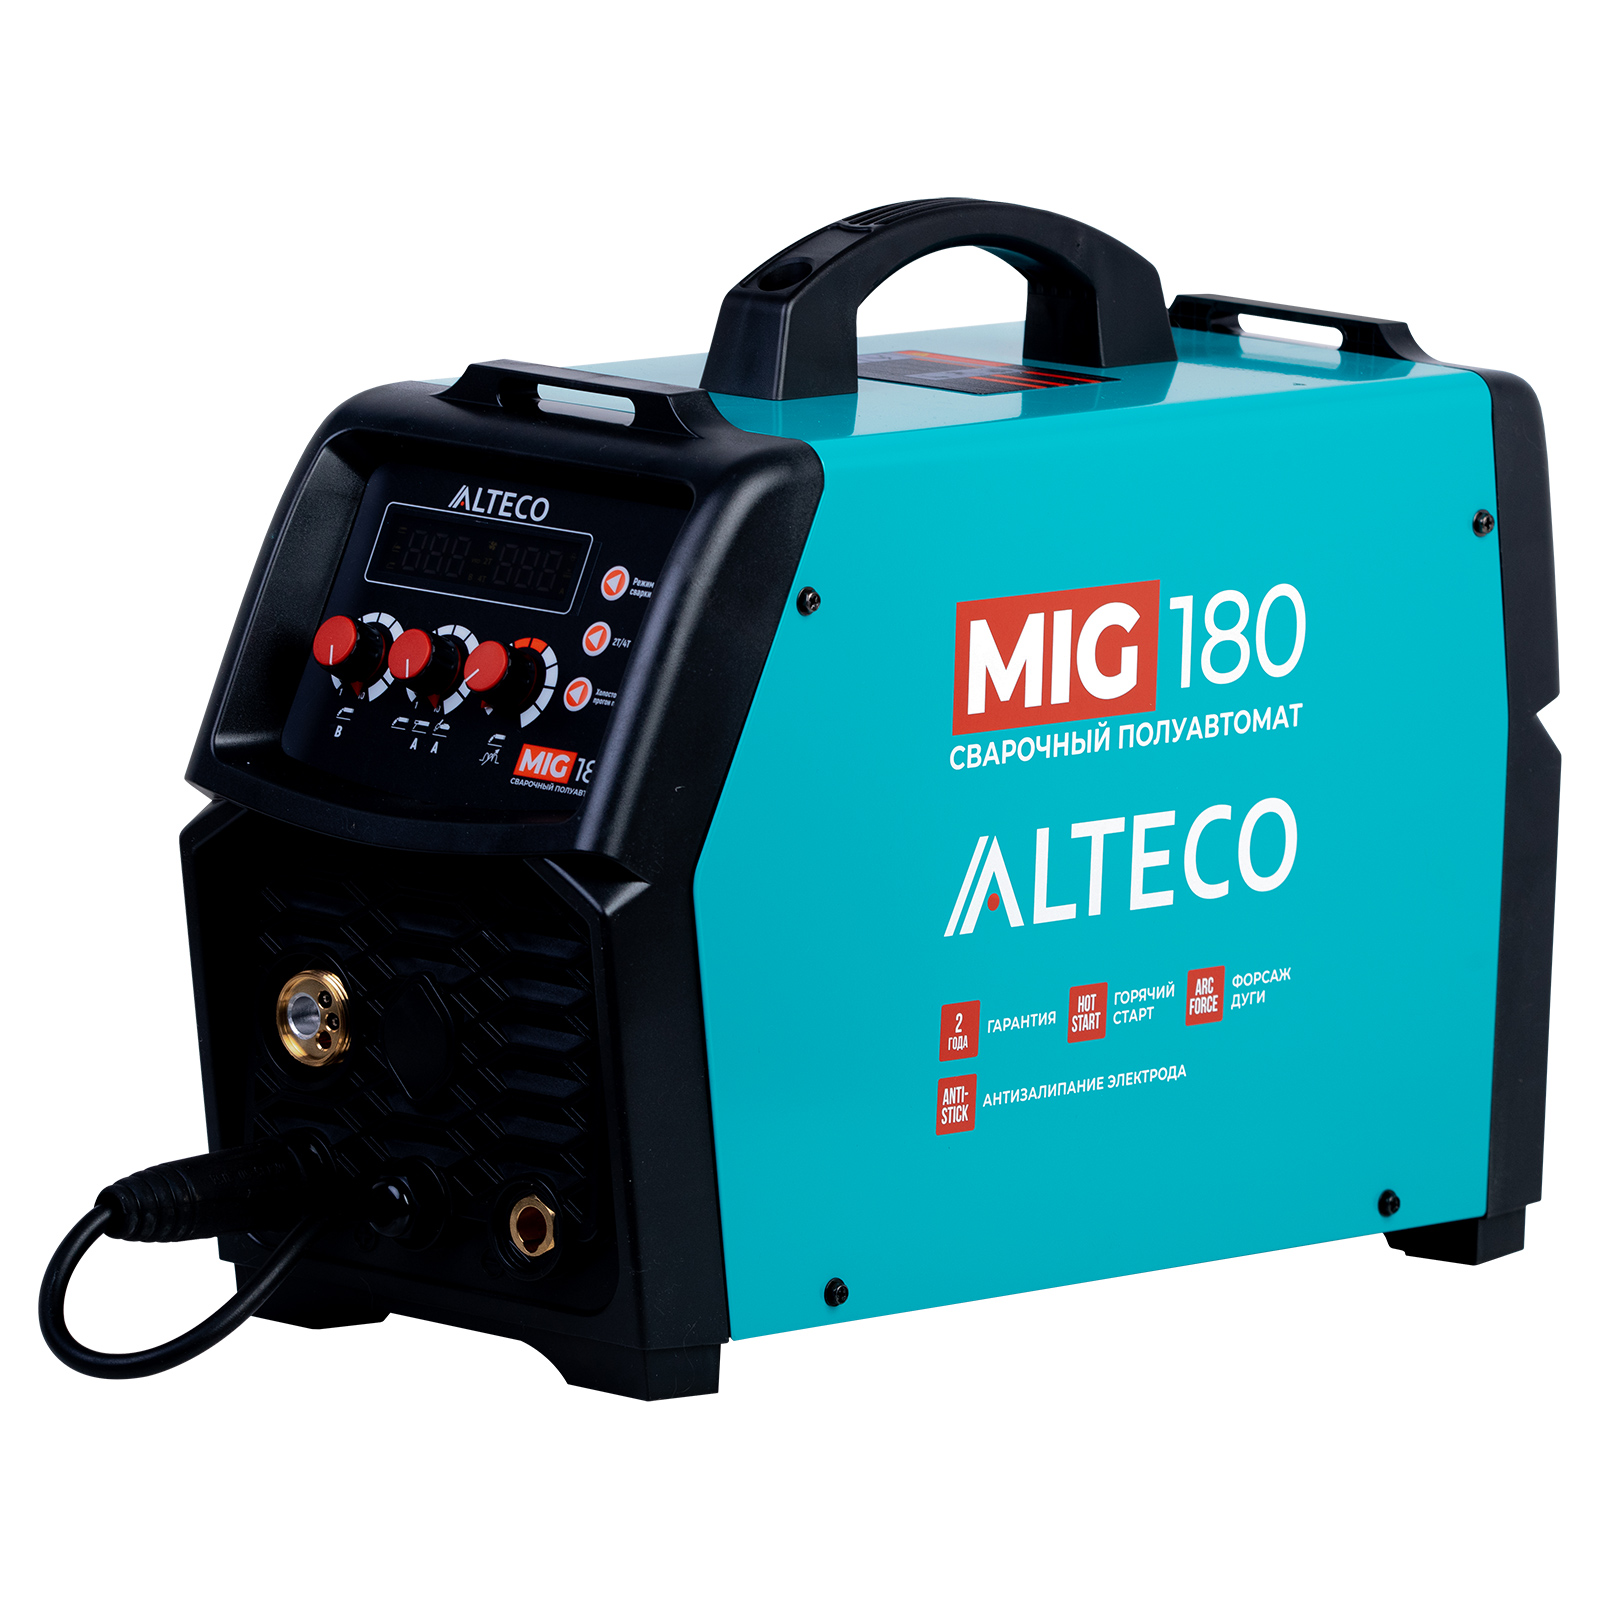 ALTECO Cварочный полуавтомат MIG 180